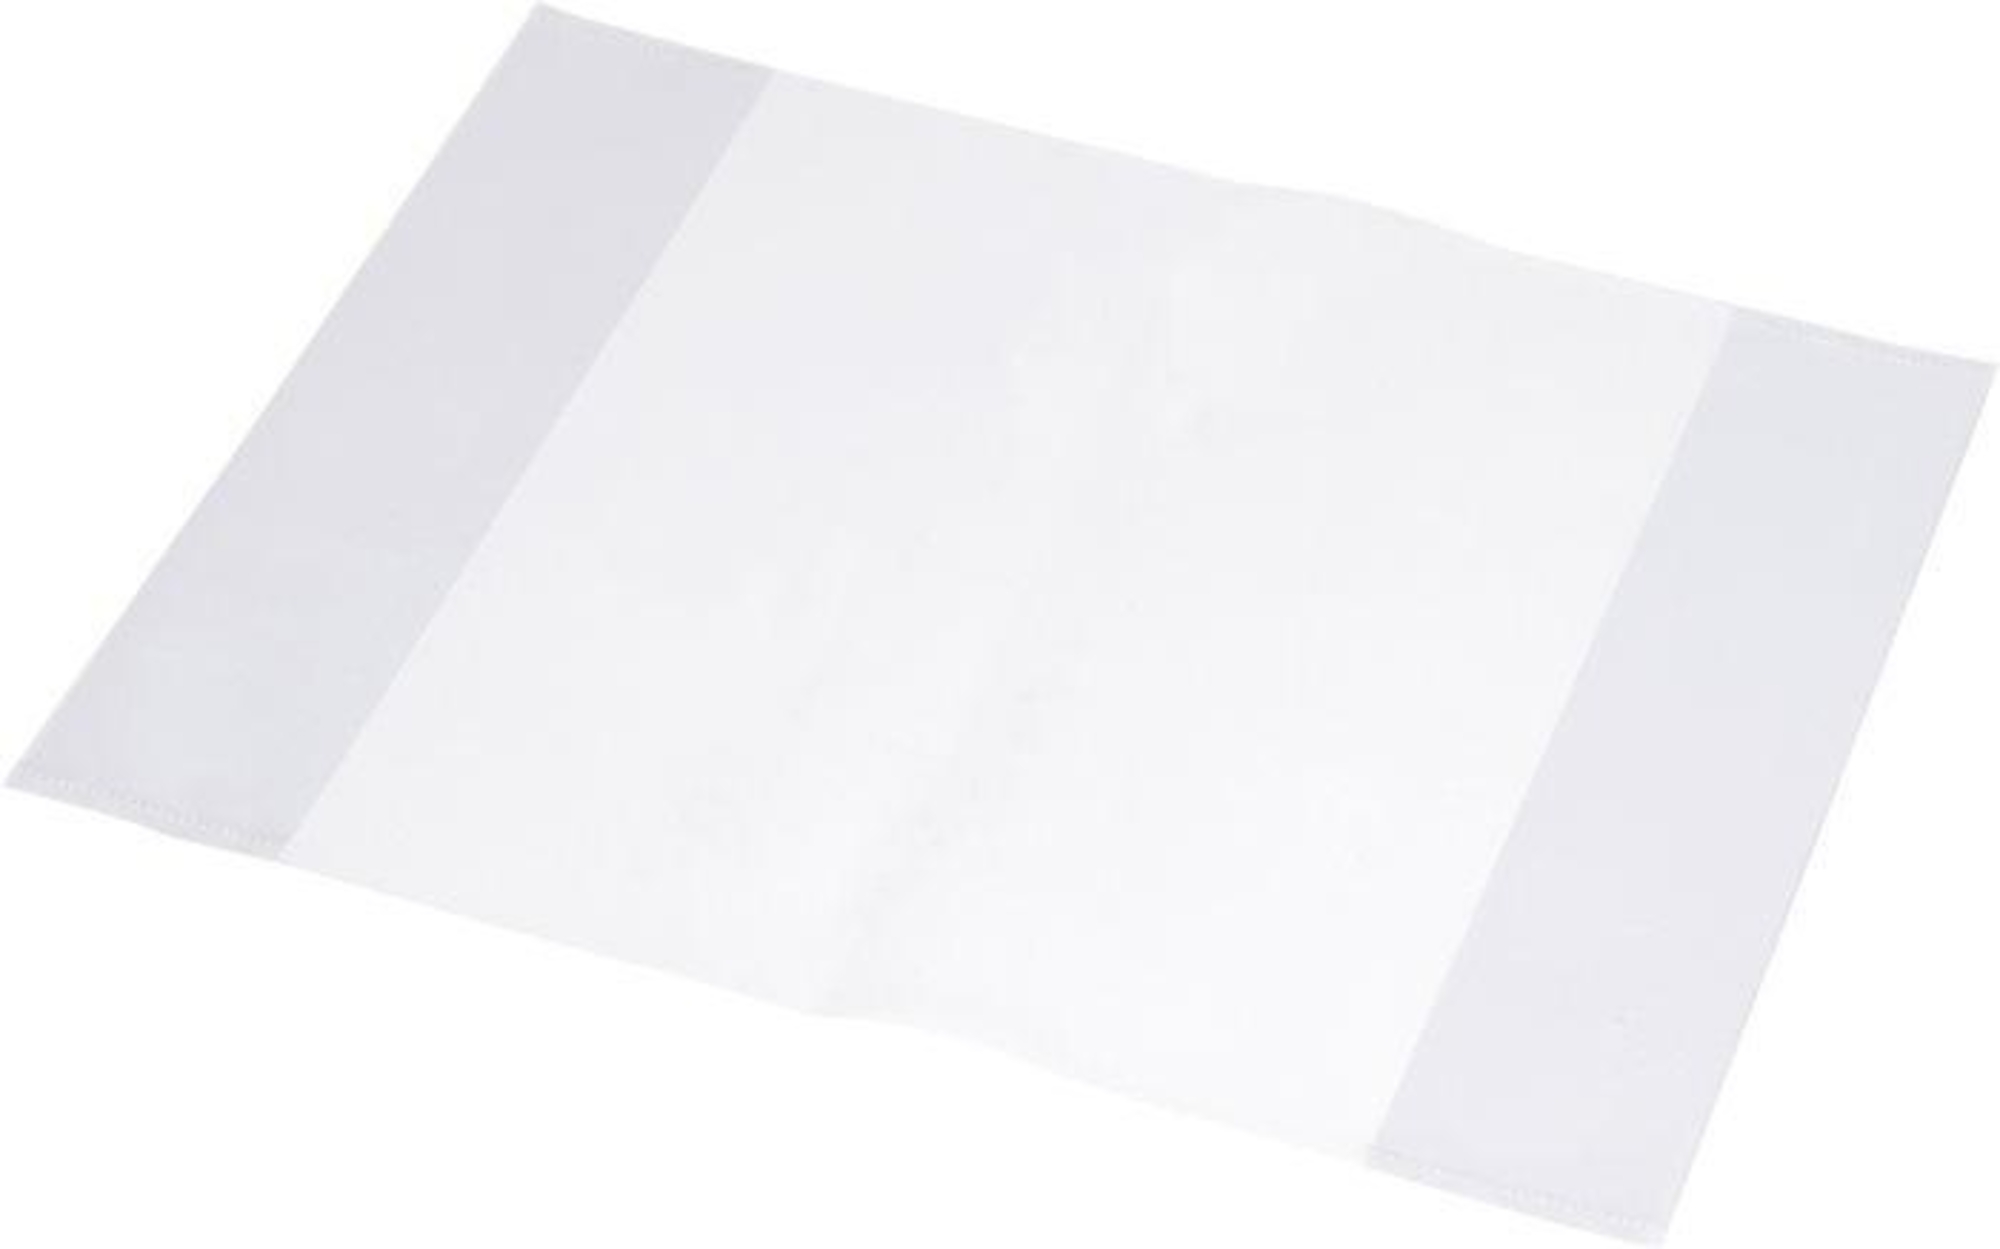 Panta plast Obaly na sešity A4, transparentní, 10 ks